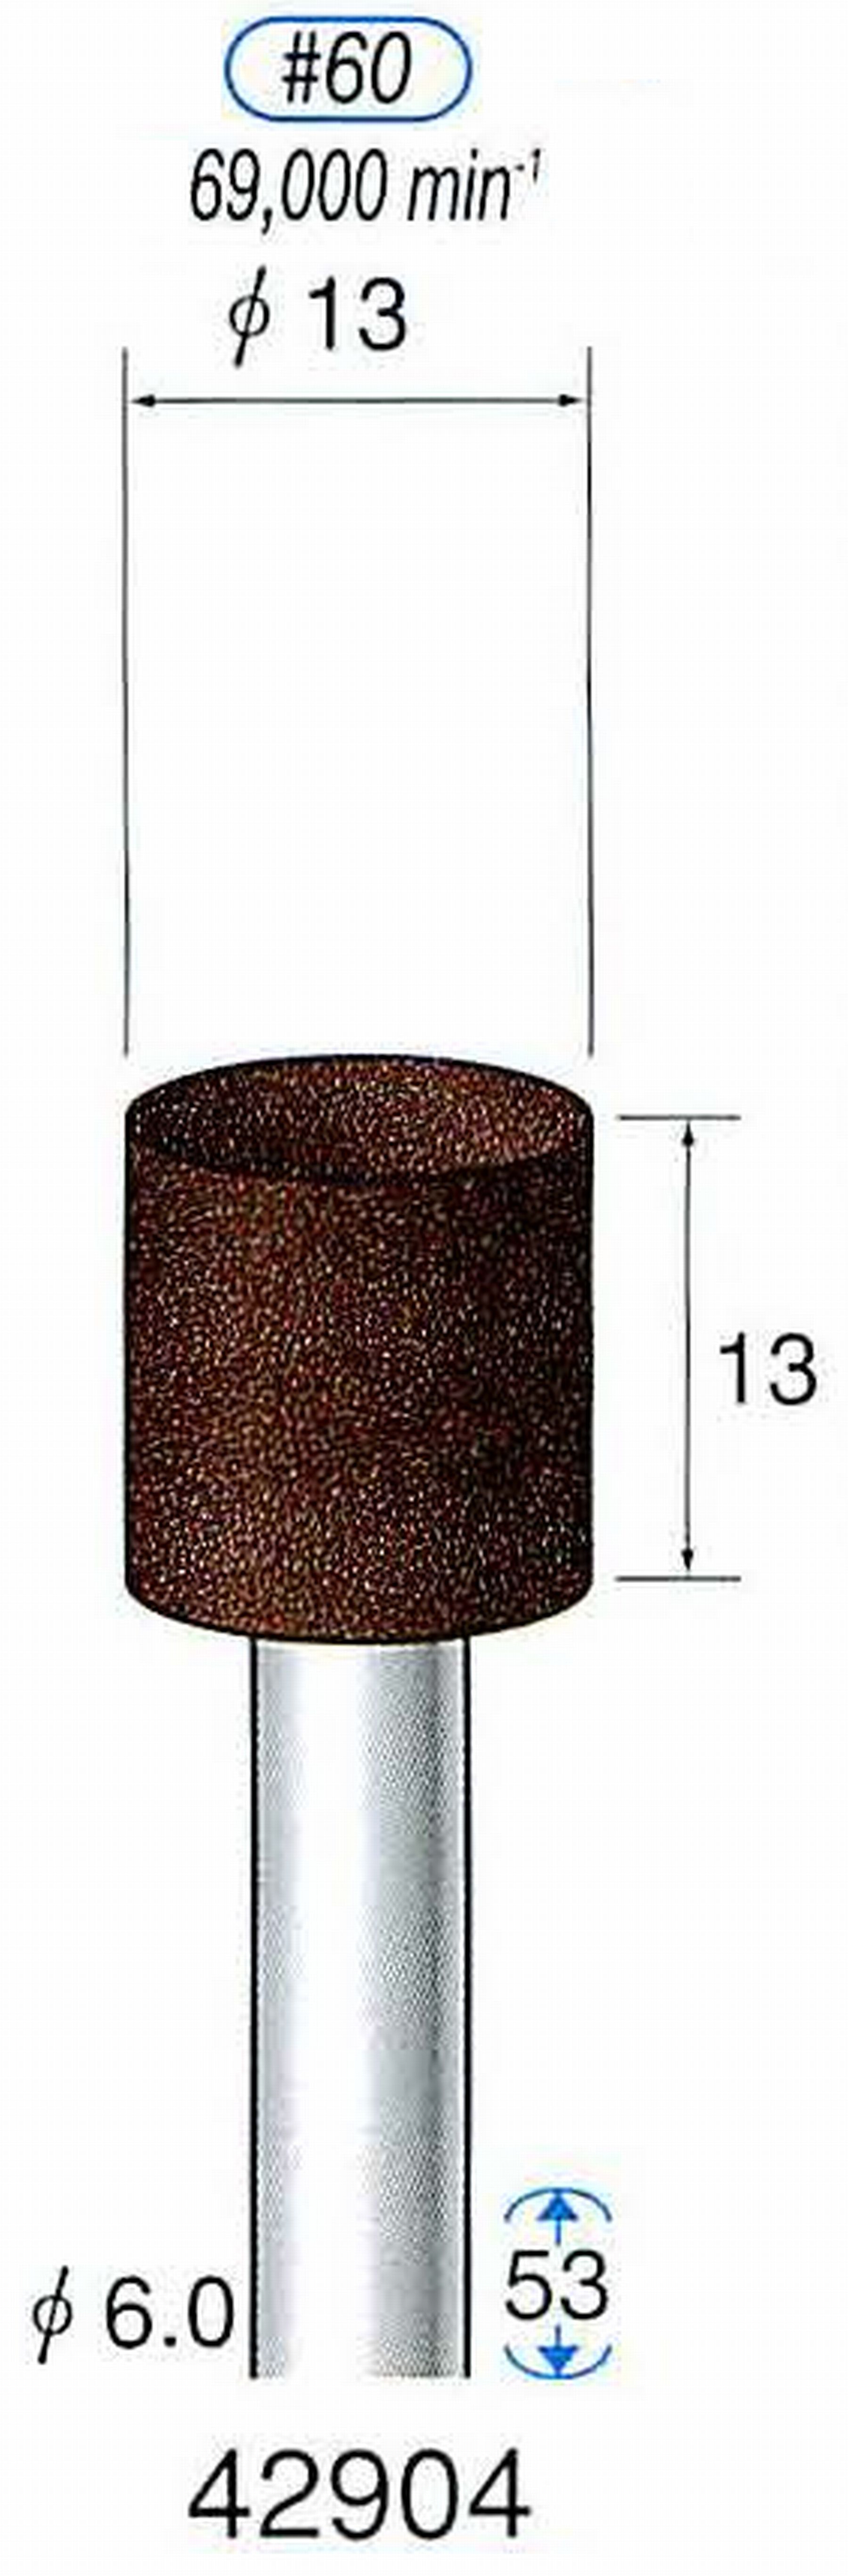 ナカニシ/NAKANISHI 軸付砥石(A・WA砥粒) ブラウン砥石 軸径(シャンク) φ6.0mm 42904